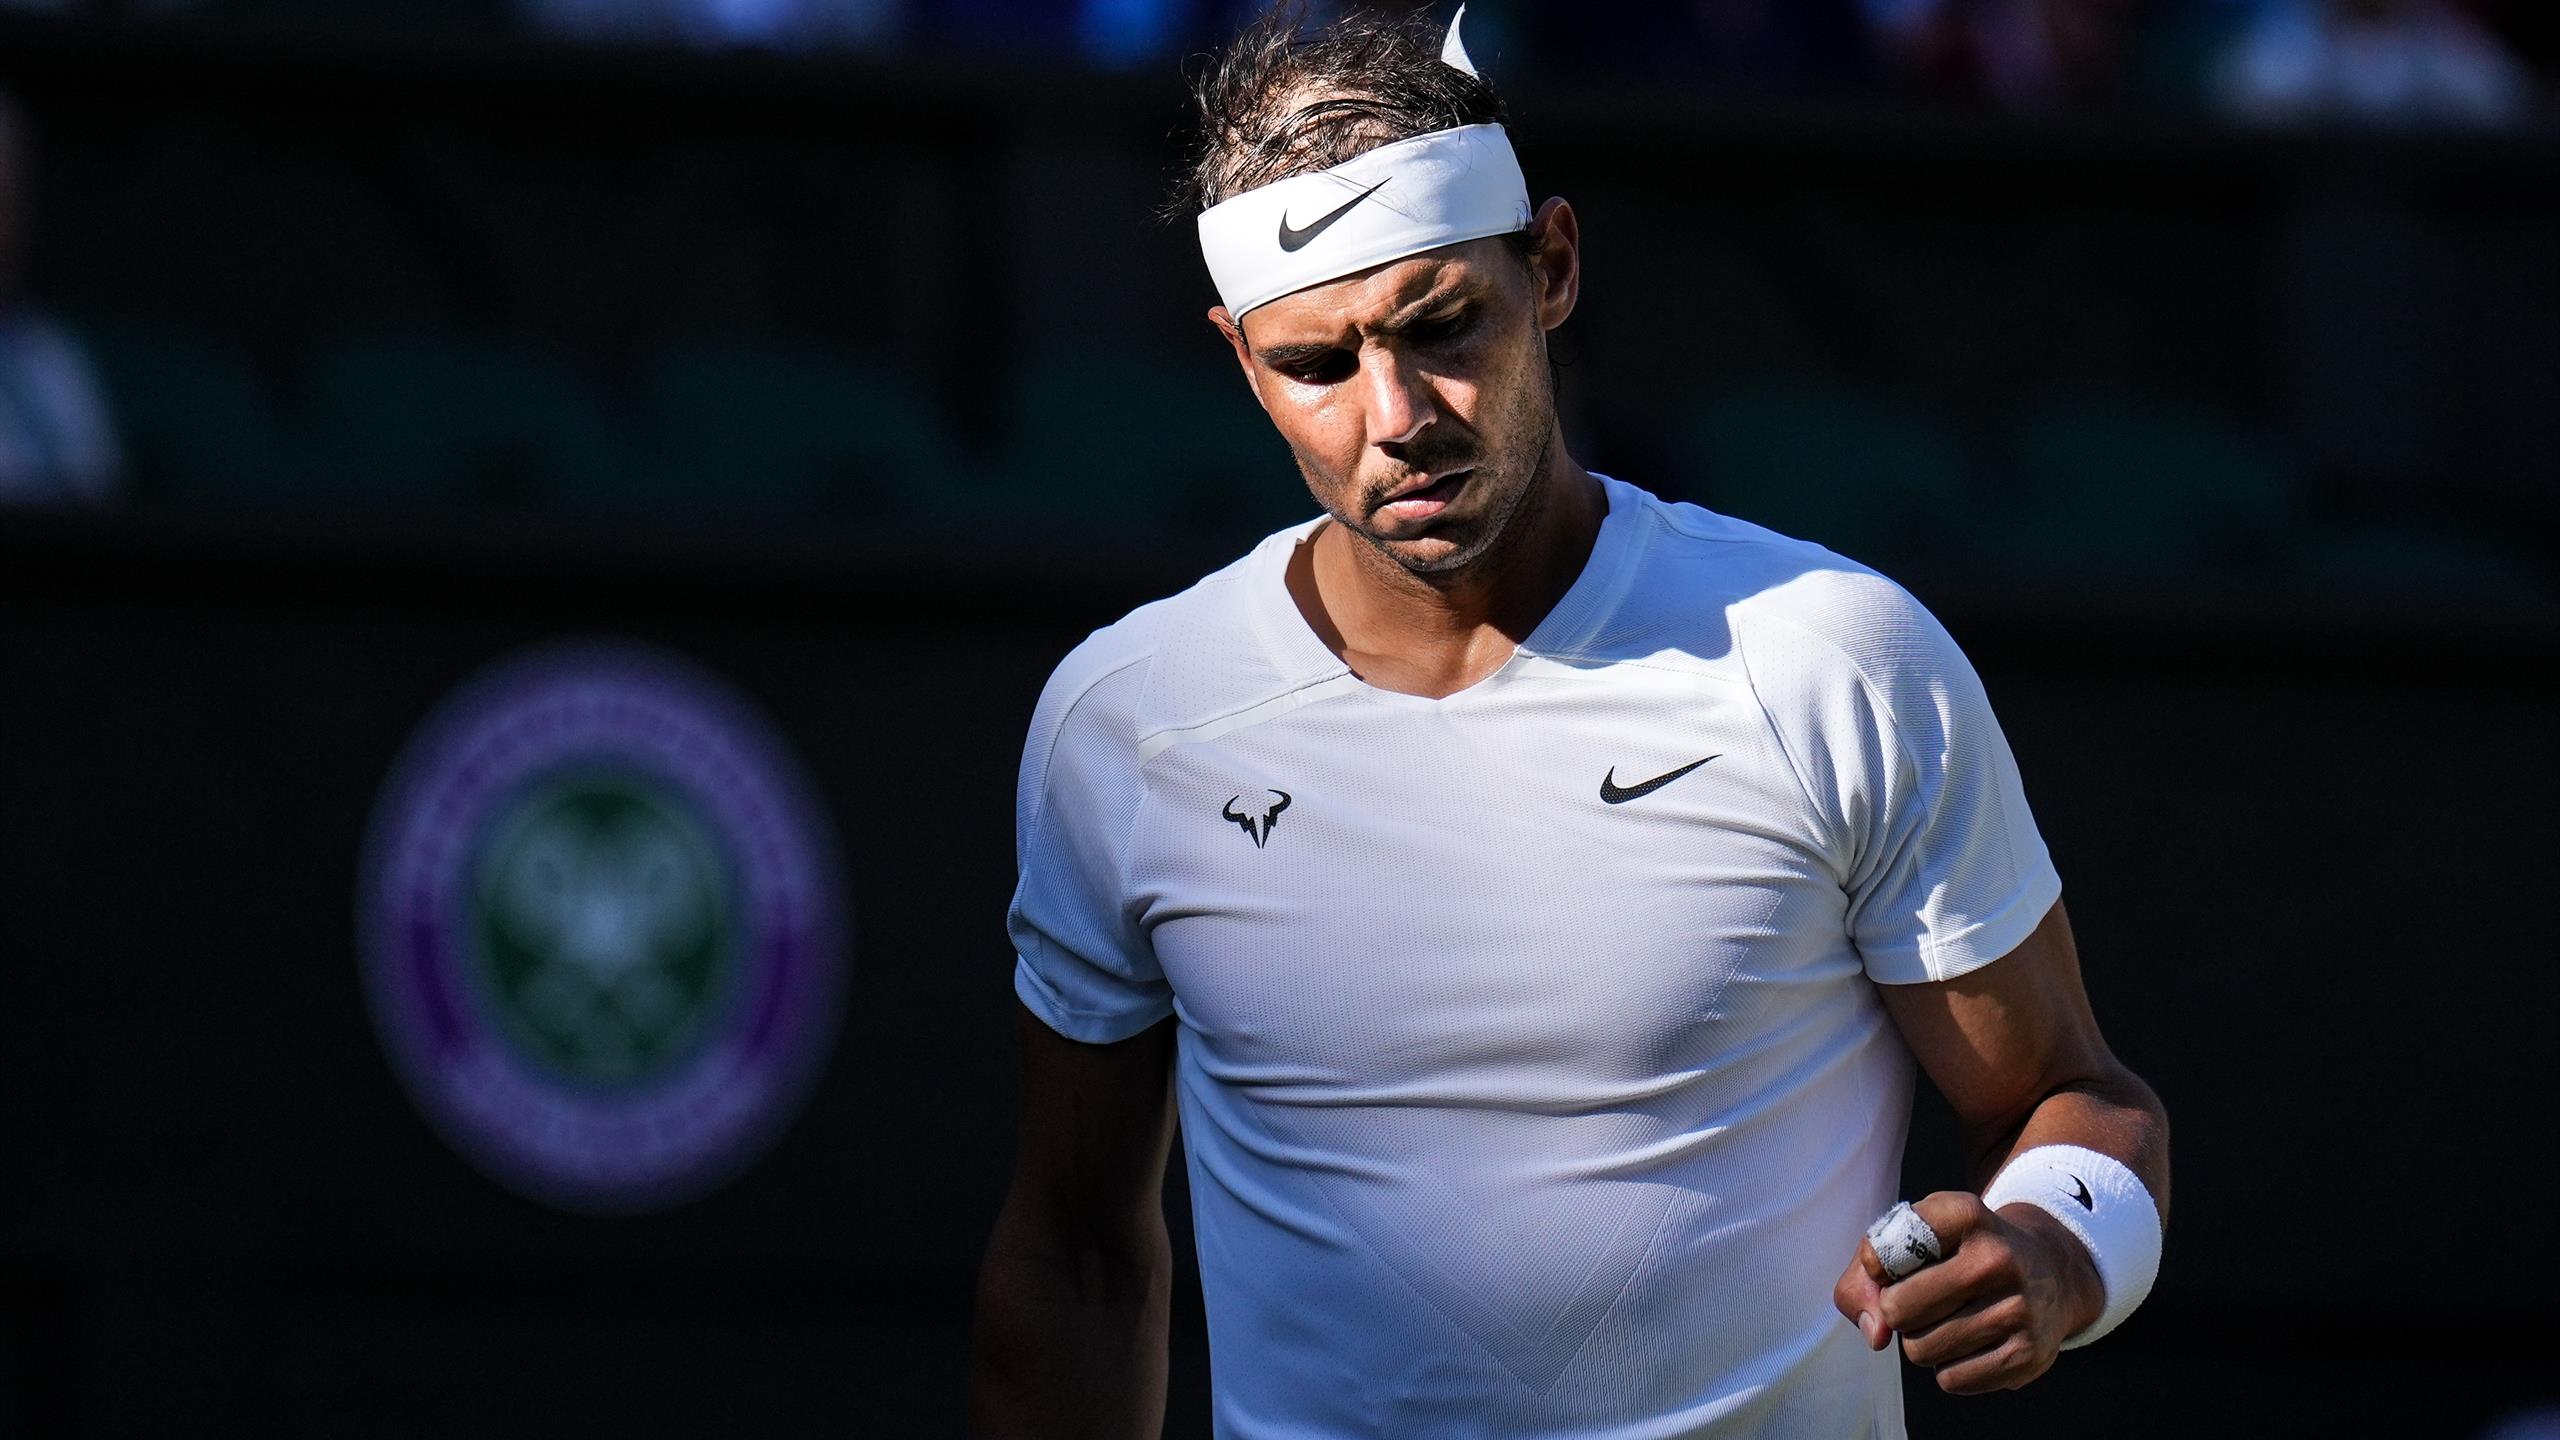 Wimbledon 2022 - Rafael Nadal, vainqueur de Ricardas Berankis, verra le troisième tour (6-4, 6-4, 4-6, 6-3) - Eurosport FR